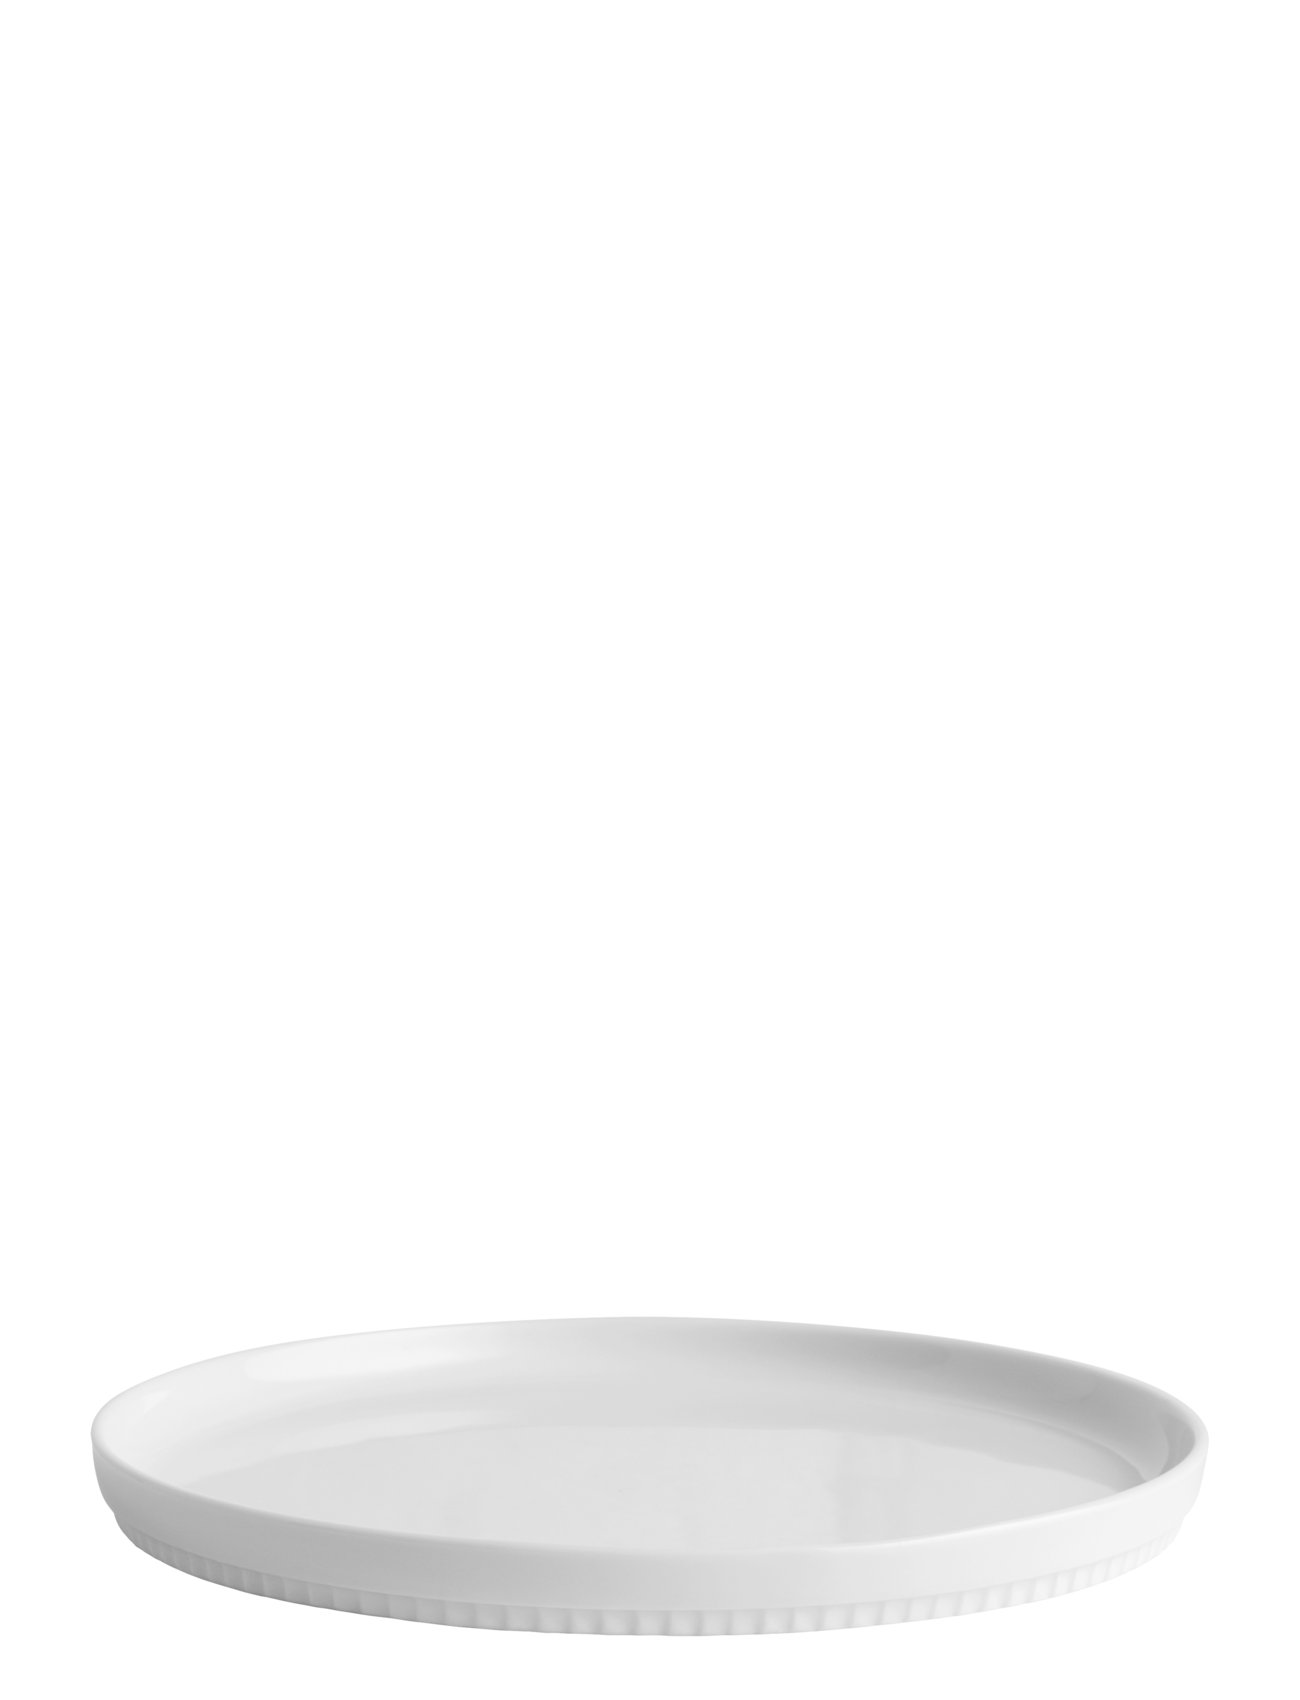 Tallerken Flad, Lige Kant Toulouse 15,5 Cm Hvid Ovnfast Home Tableware Plates Dinner Plates White Pillivuyt